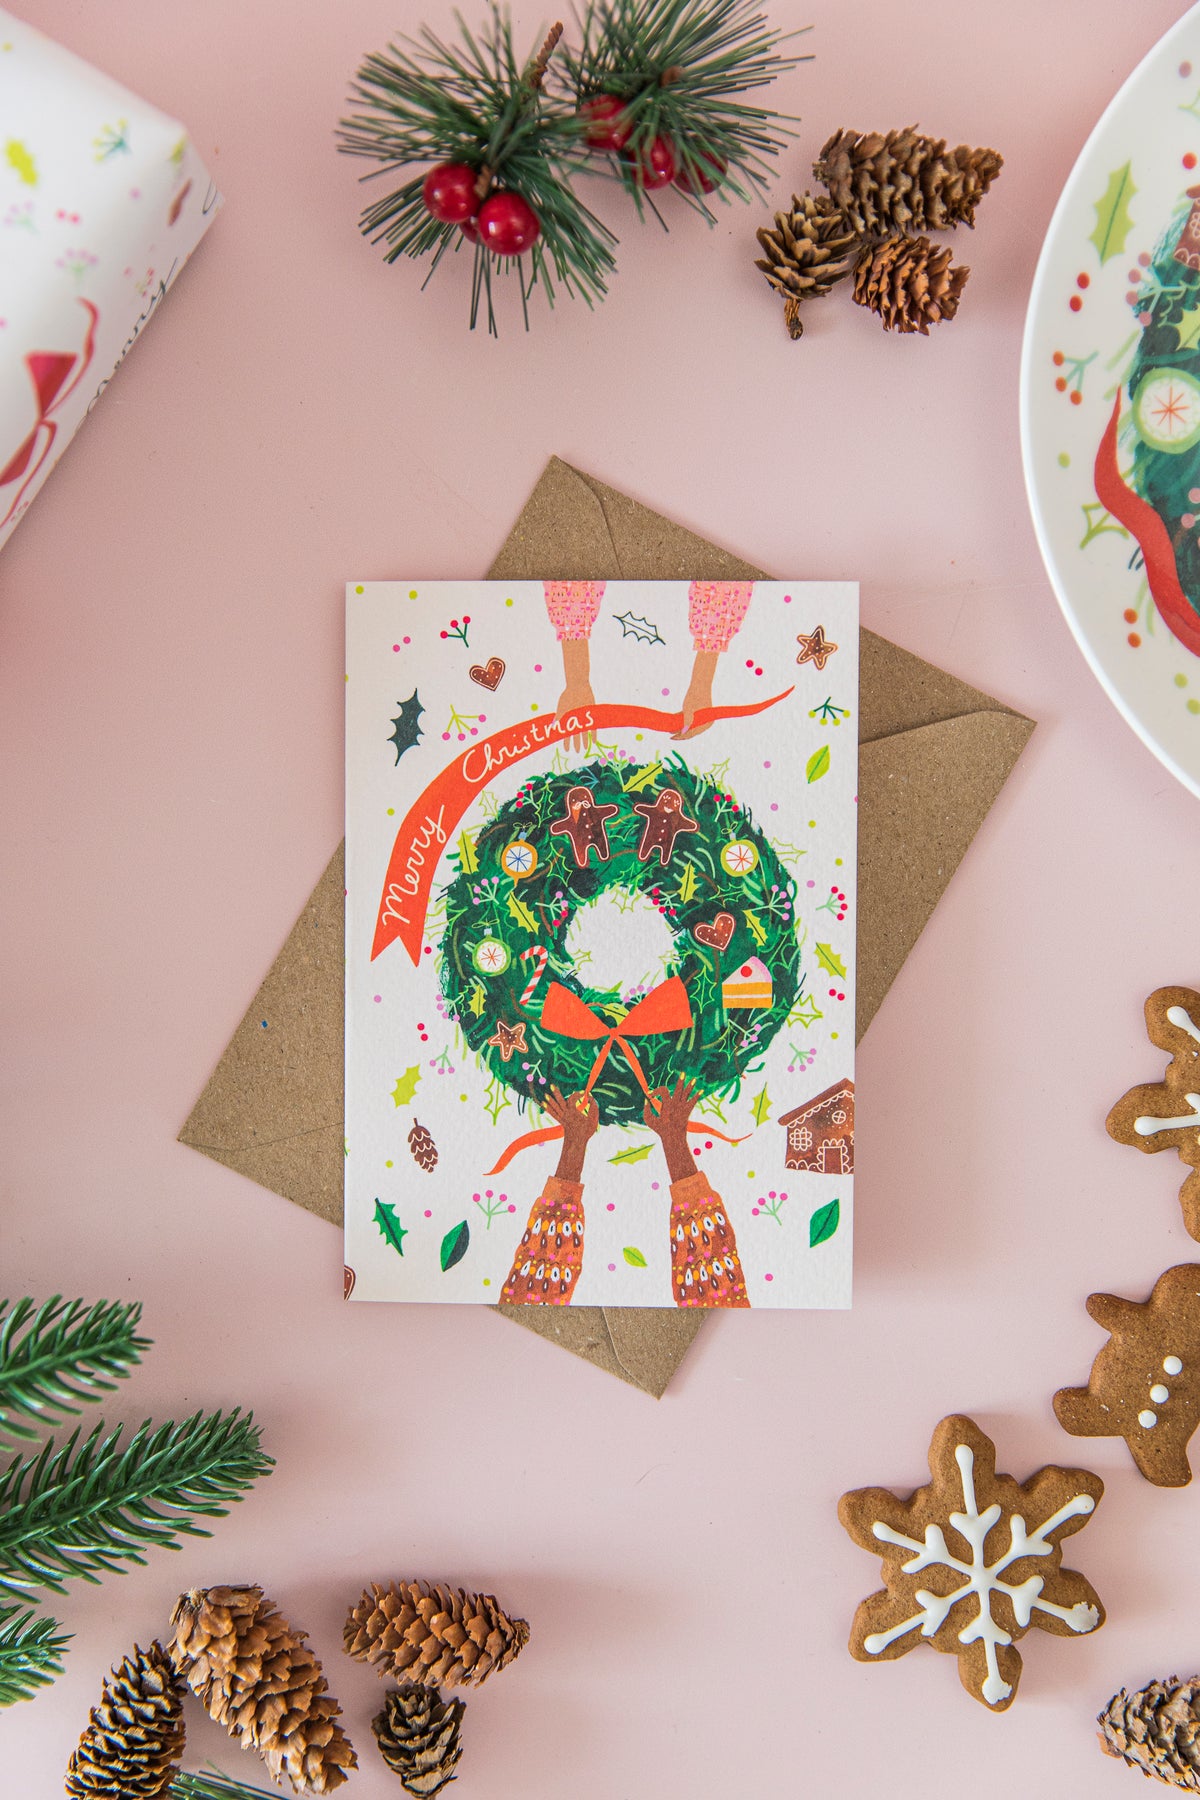 Afternoon Crumbs & Viktorija Illustration Wreath Christmas Card Flat Lay